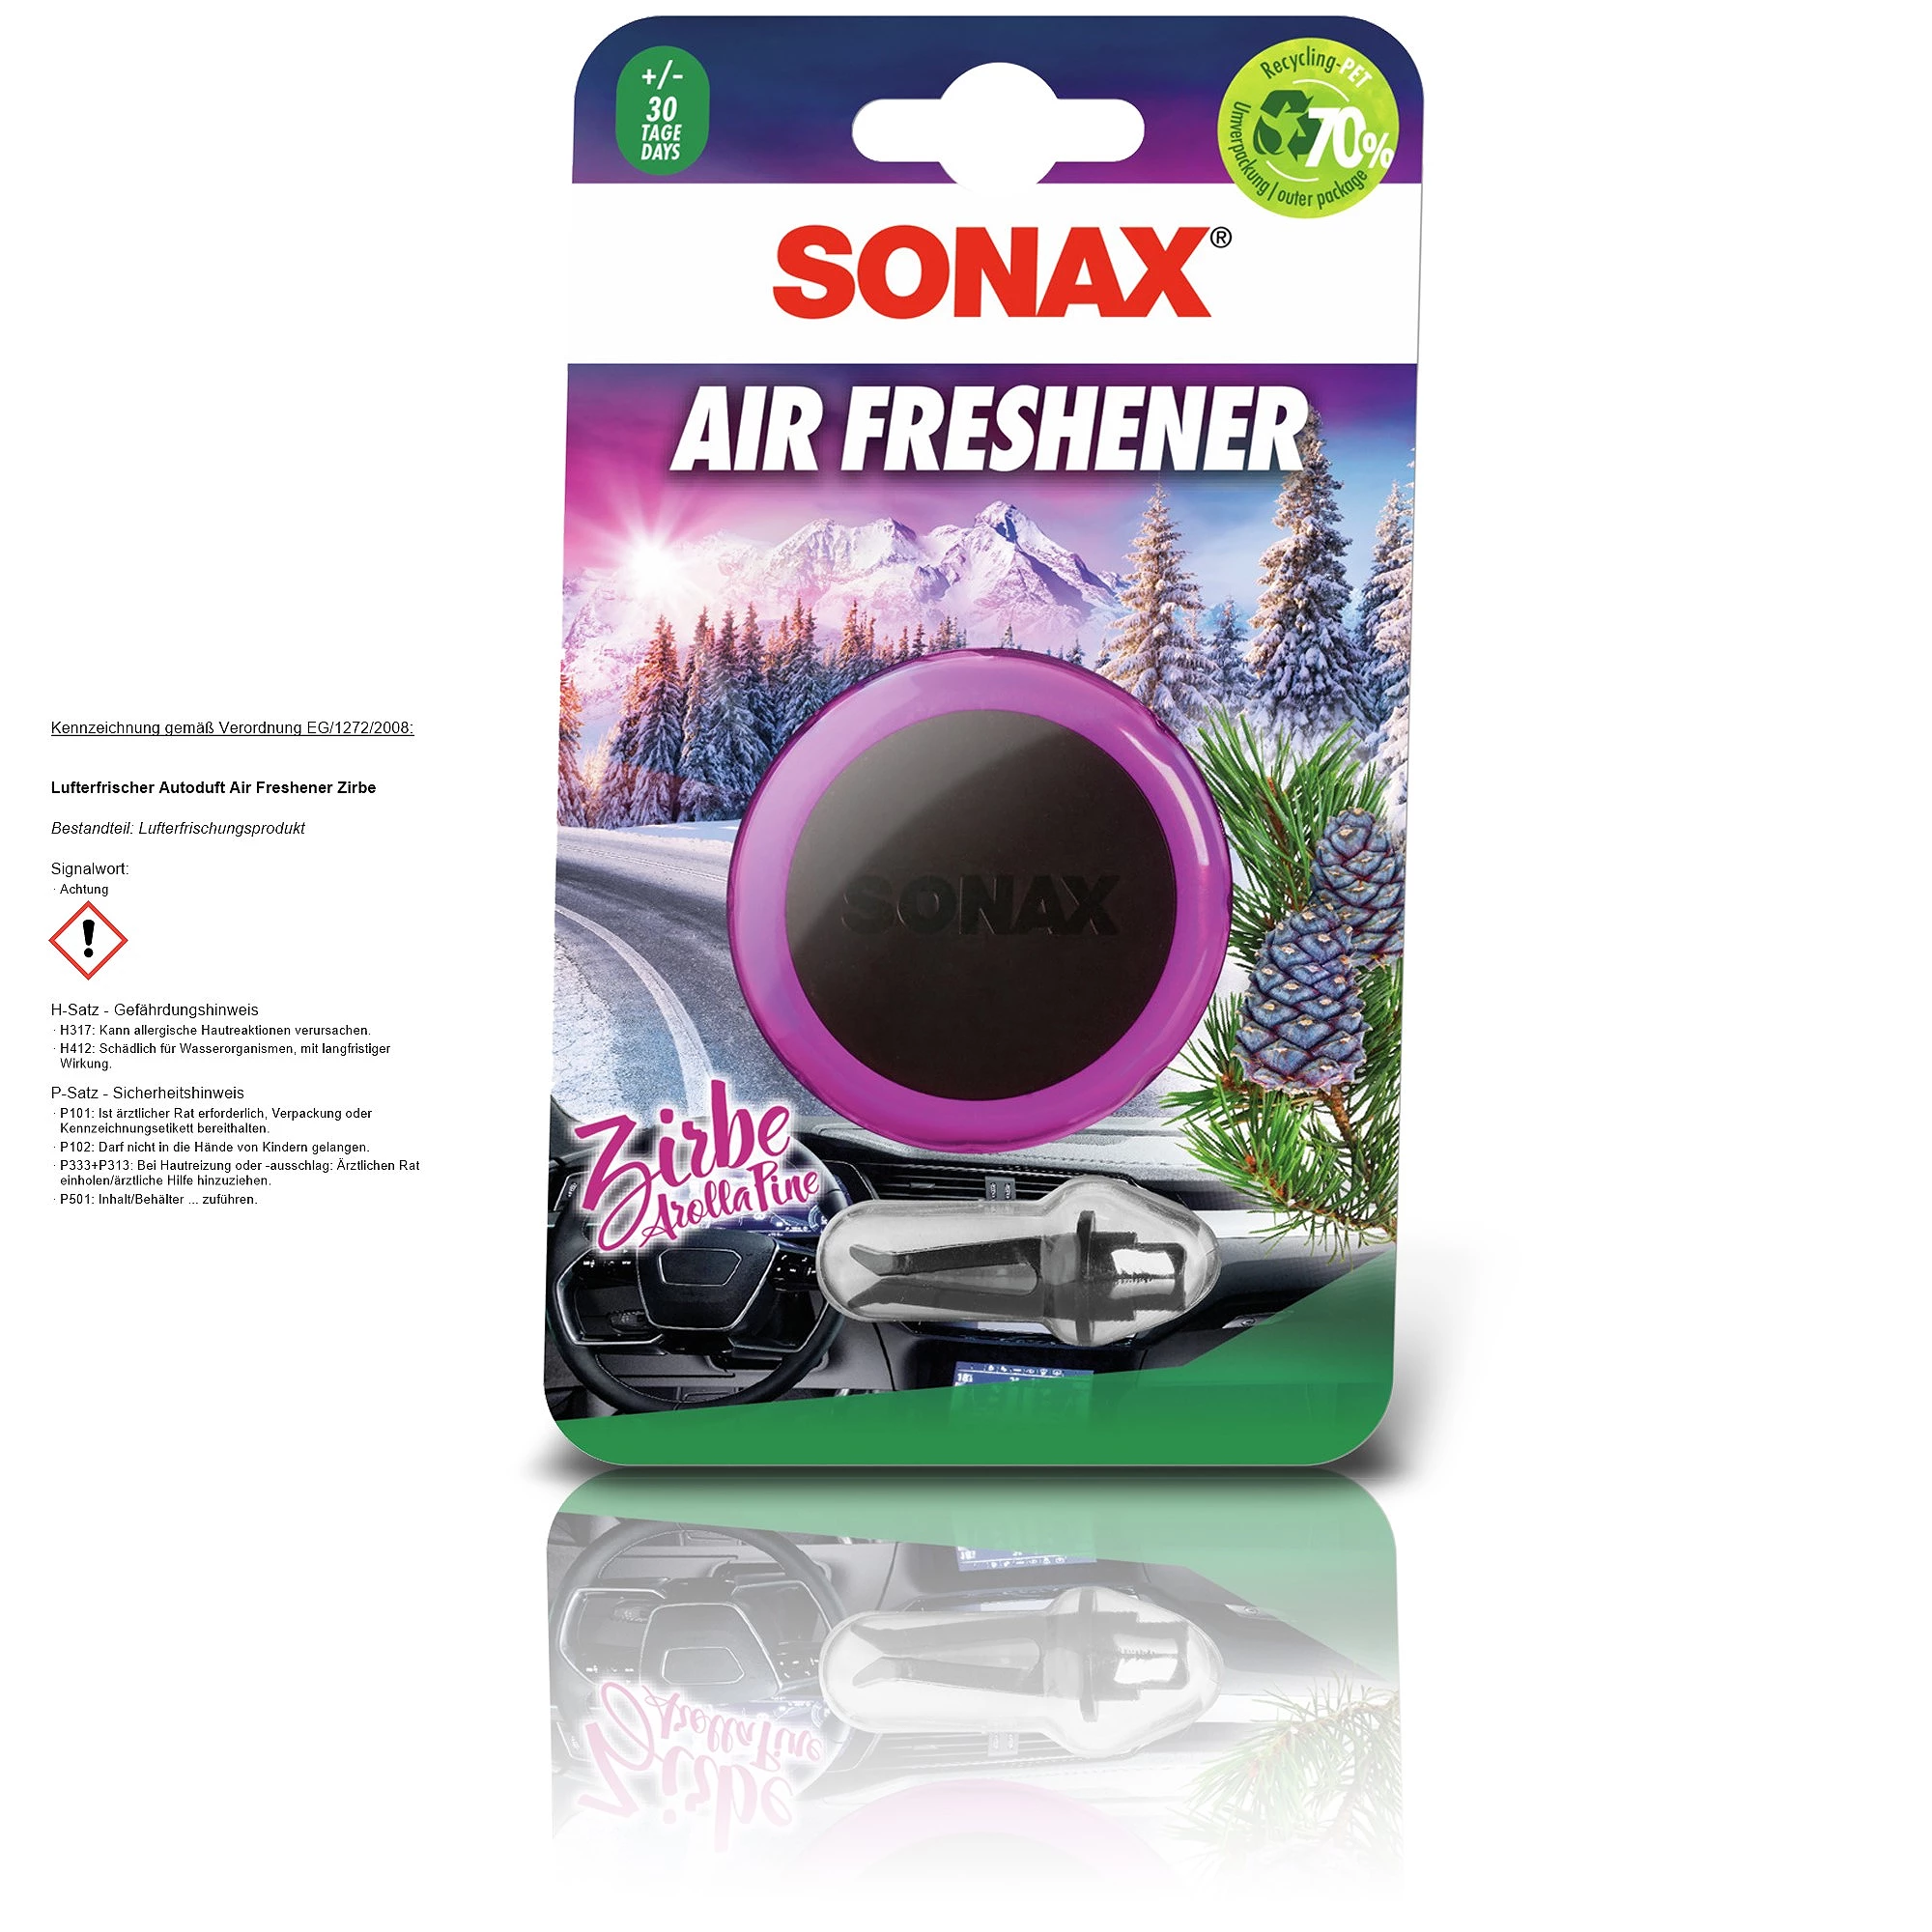 SONAX Lufterfrischer Autoduft Air Freshener Zirbe 0670410 günstig